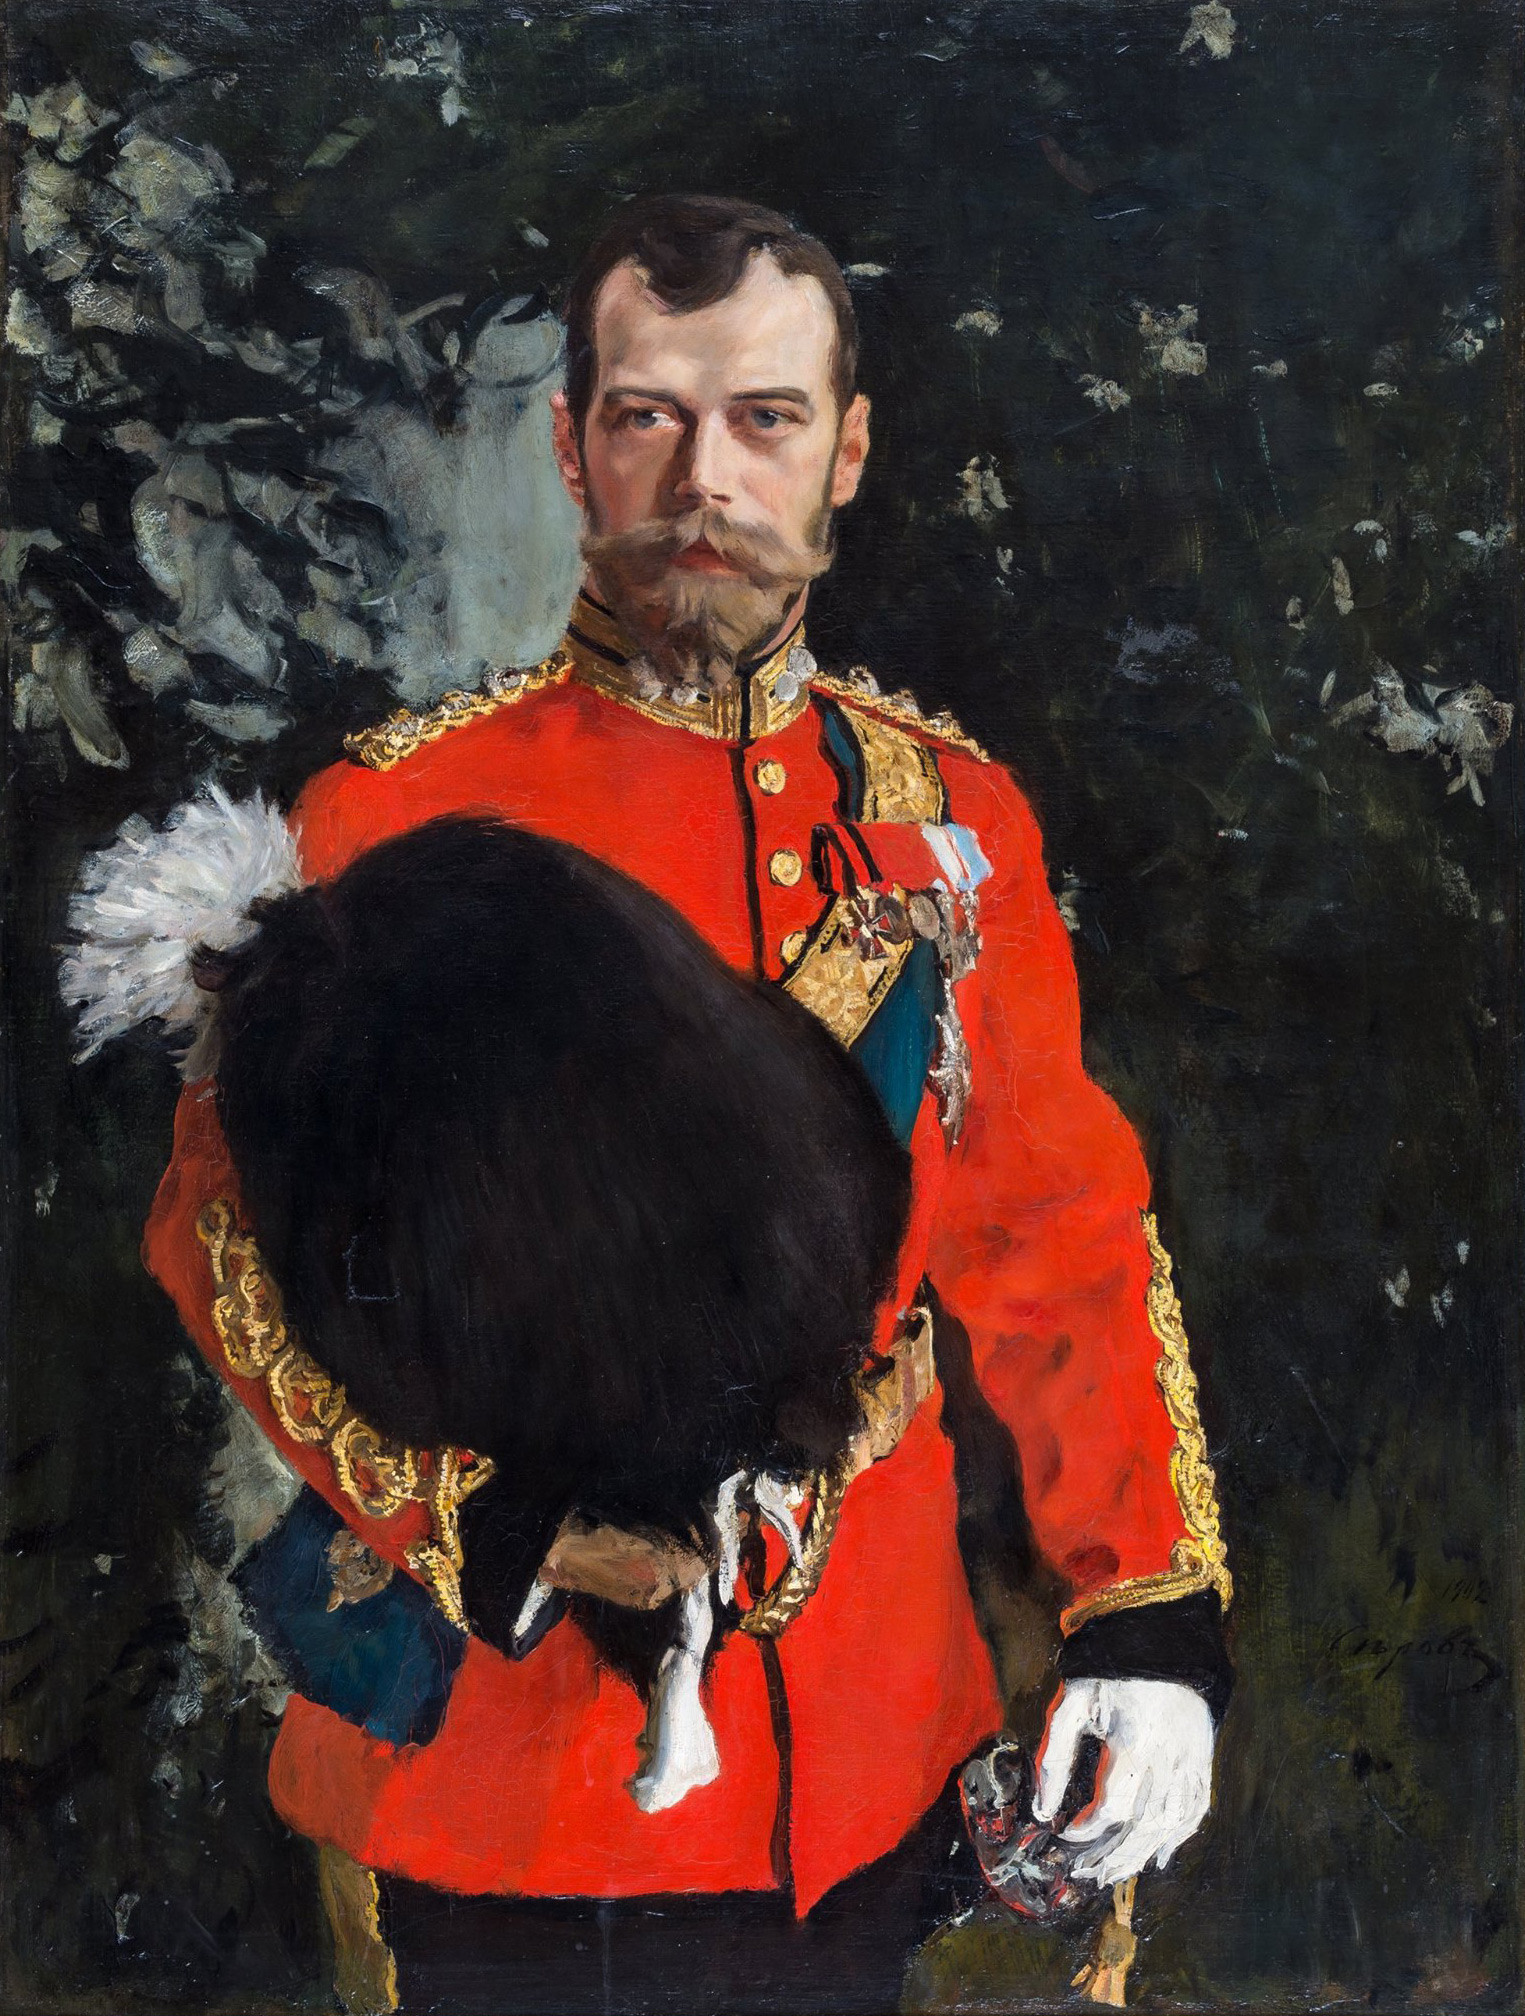 Retrato de Nicolás II, coronel en jefe de los Royal Scots Greys, 1902, obra de Valentín Serov. El emperador es vestido con uniforme completo como coronel en jefe de los 2dos Dragones (los Royal Scots Greys).